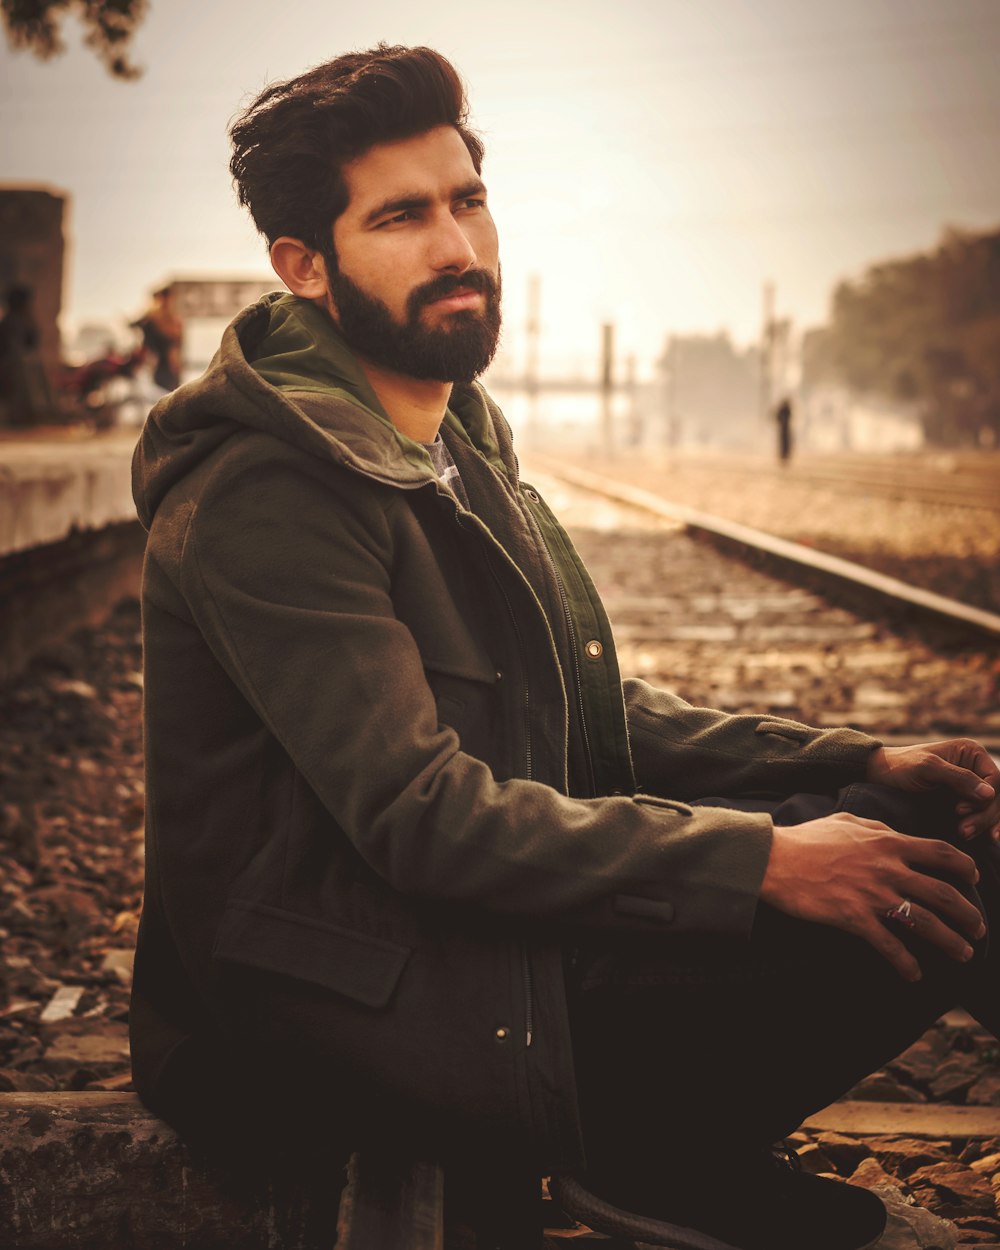 검은 재킷을 입은 남자가 철도에 앉아 있다